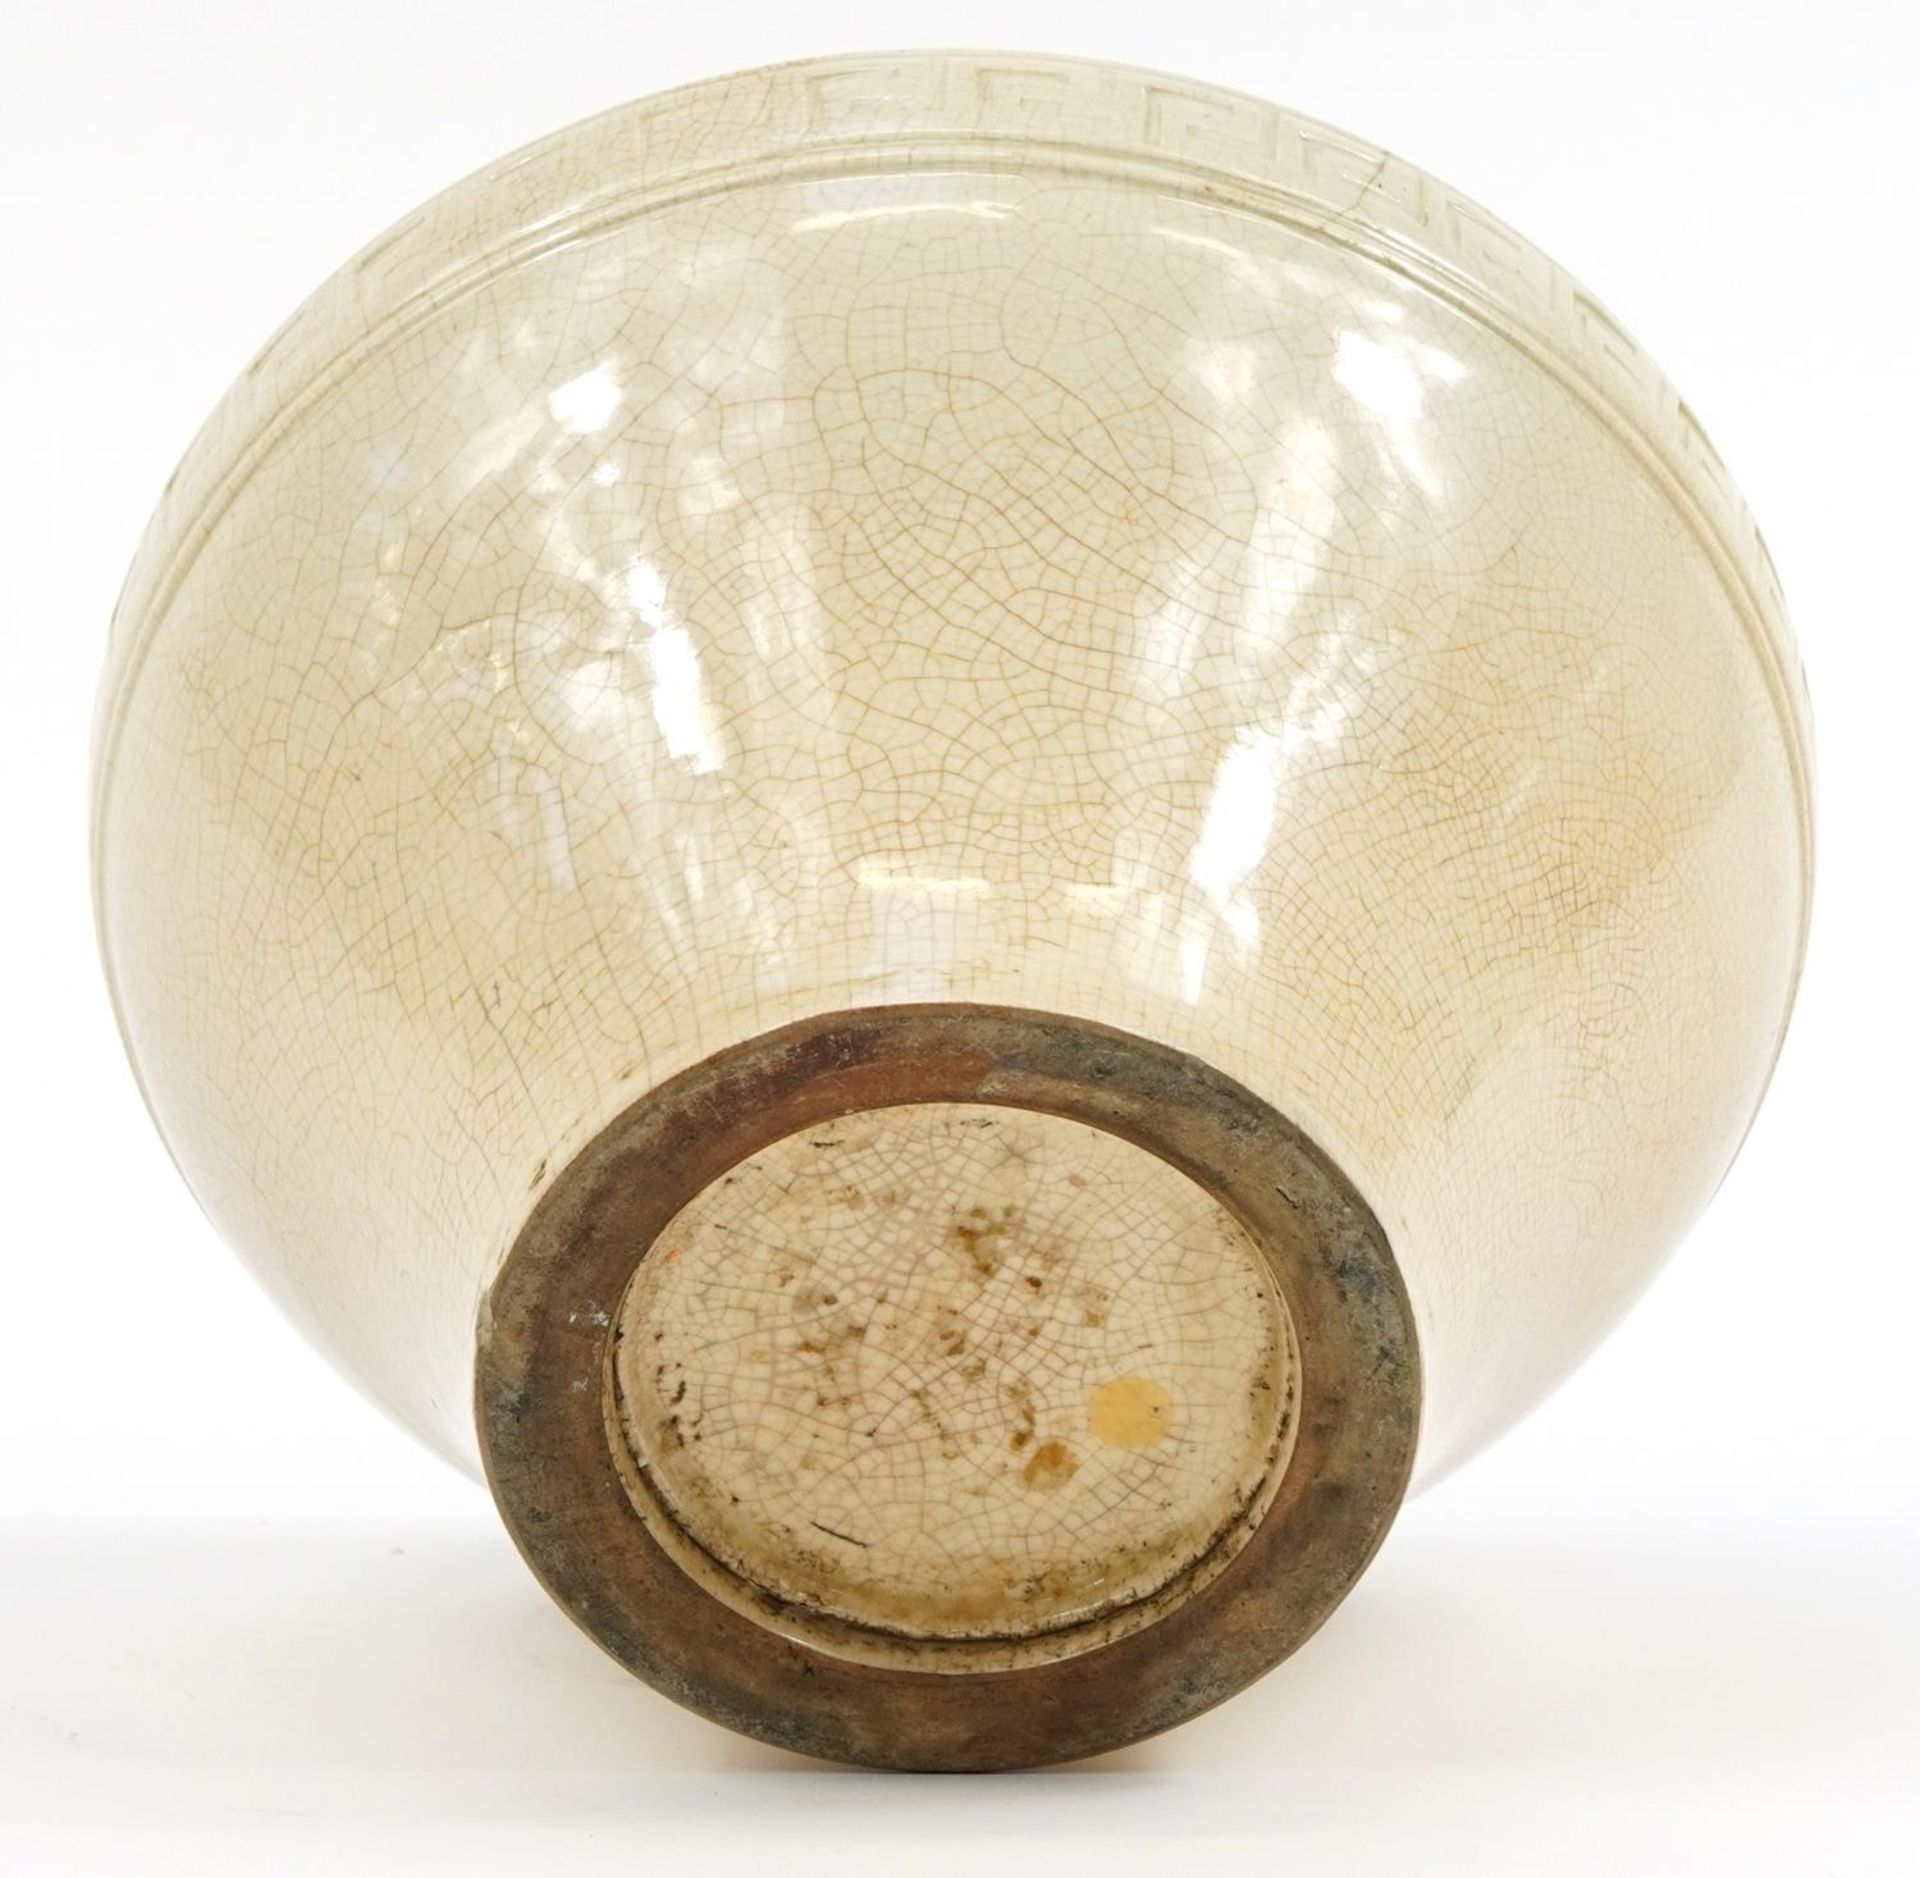 Korean porcelain baluster vase having a white glaze, 20cm high - Image 3 of 3